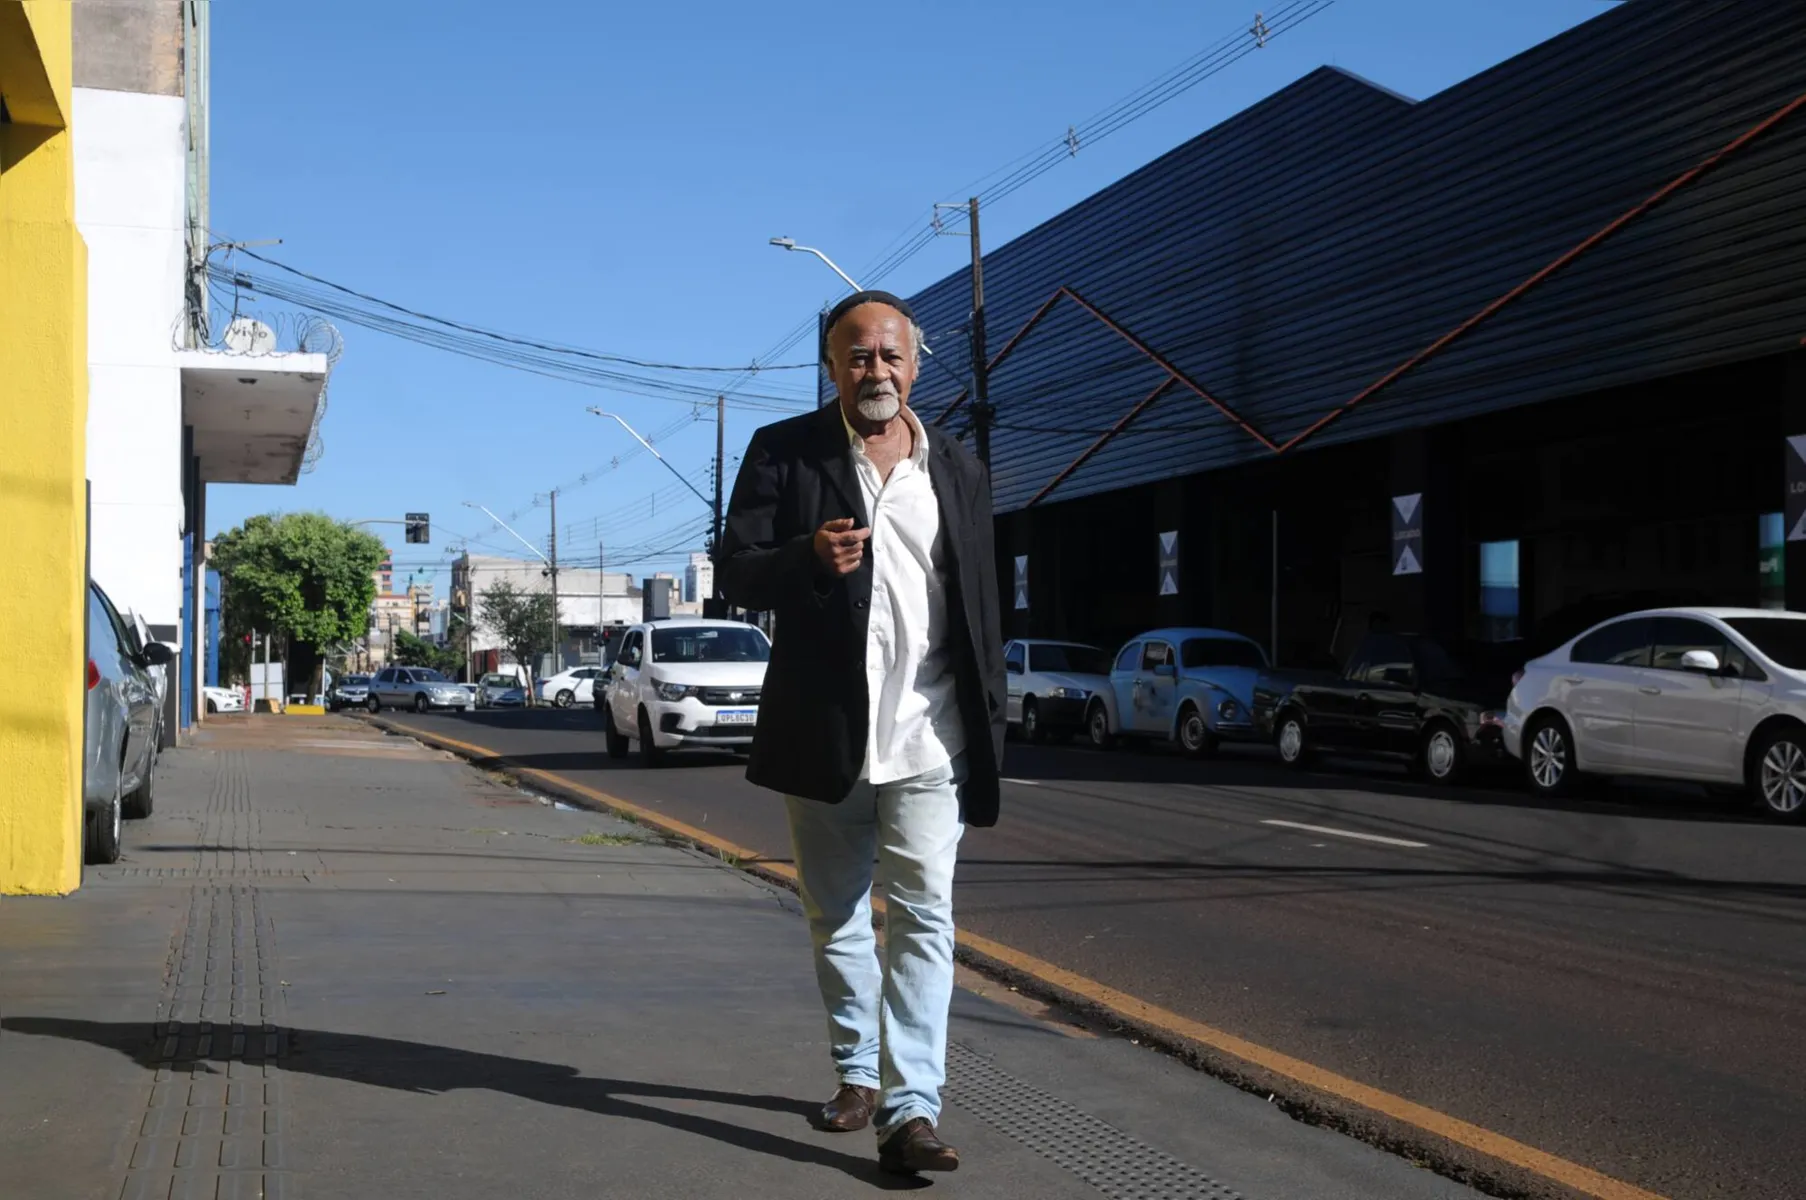 “Esta terra vermelha deixa marcas inesquecíveis”, confessa Ari Cândido Fernandes, ao caminhar pela rua Brasil onde passou sua infância em Londrina